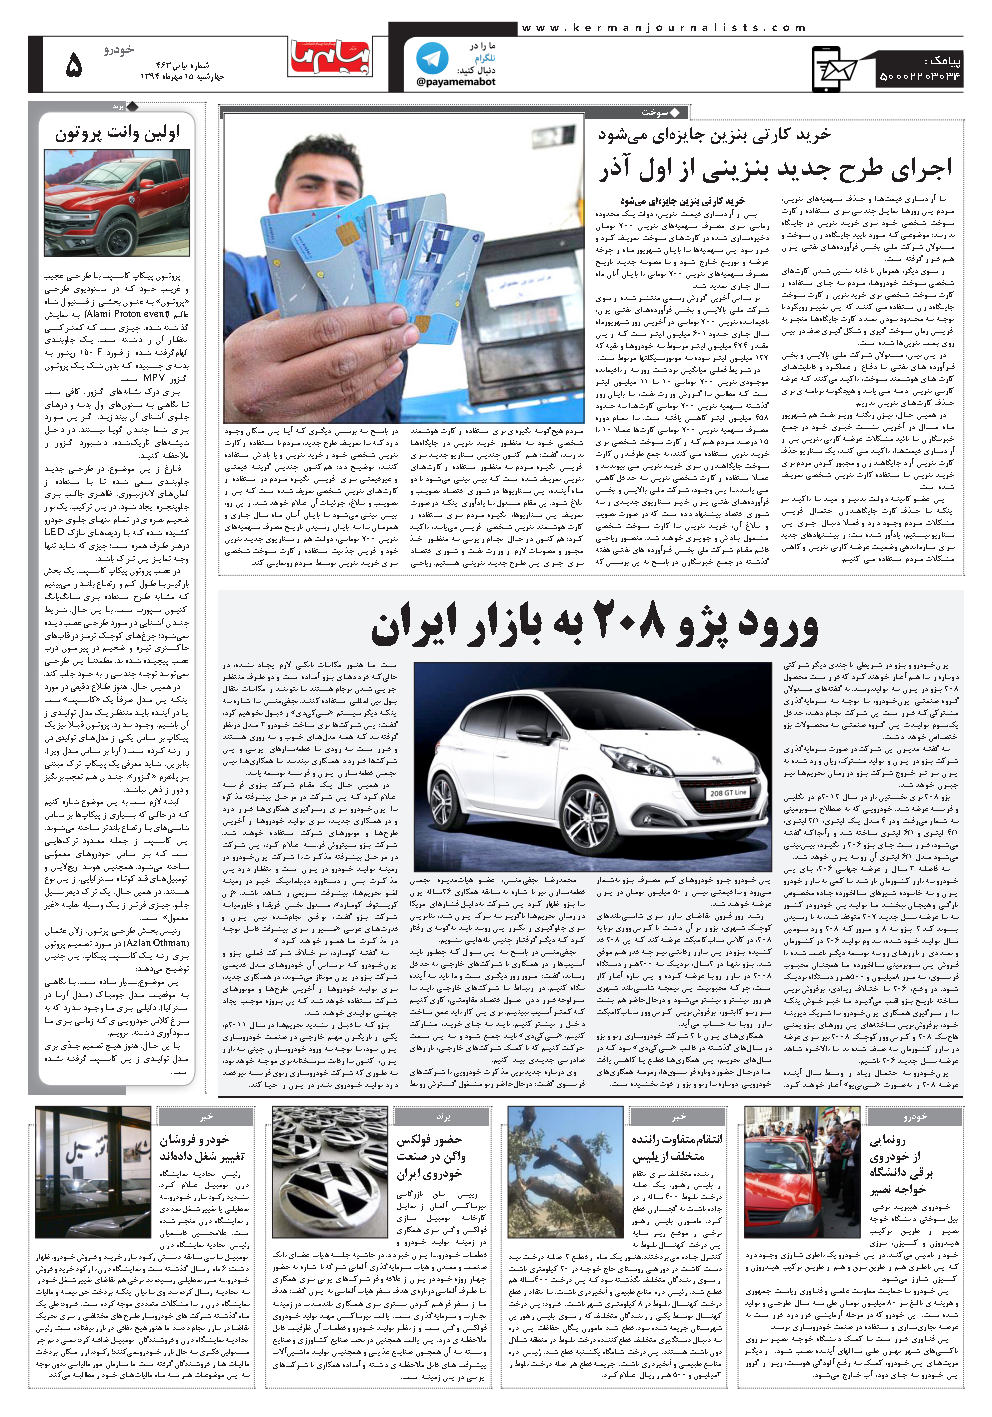 صفحه خودرو شماره شماره ۴۶۳ روزنامه پیام ما